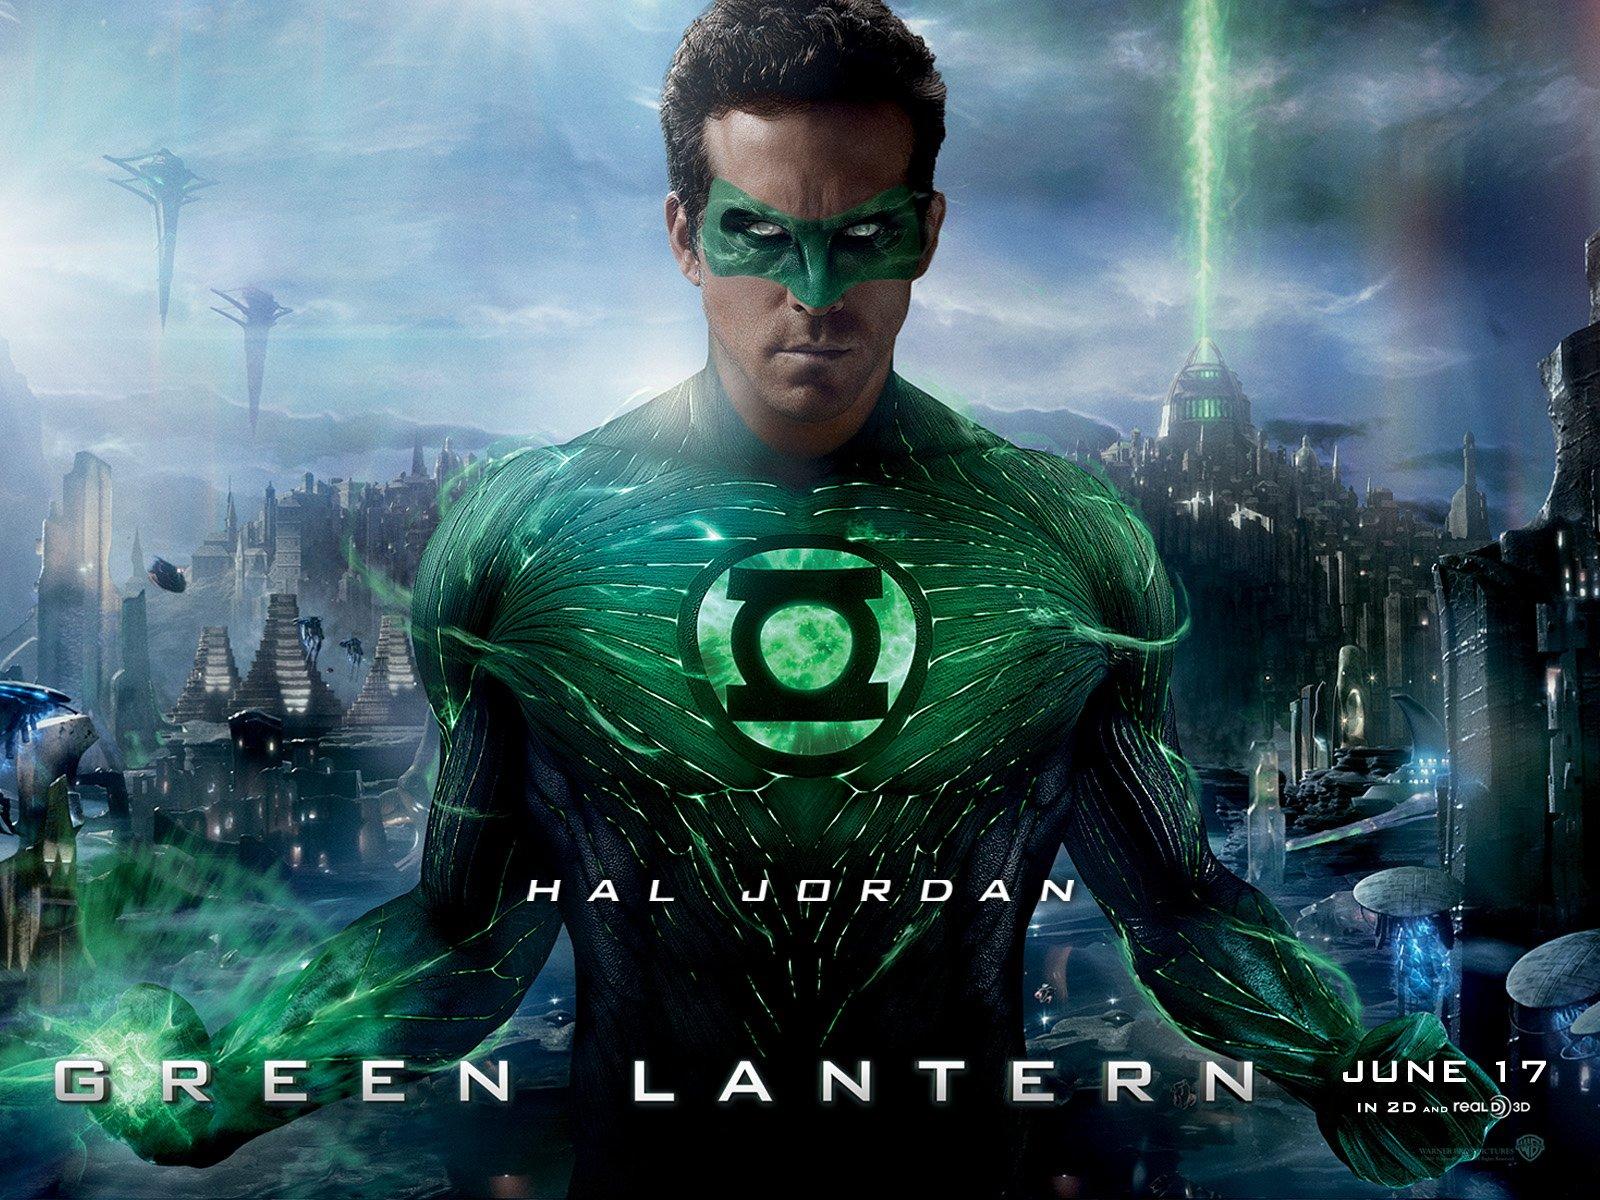 Green Lantern: Hal Jordan wallpaper. Green Lantern: Hal Jordan